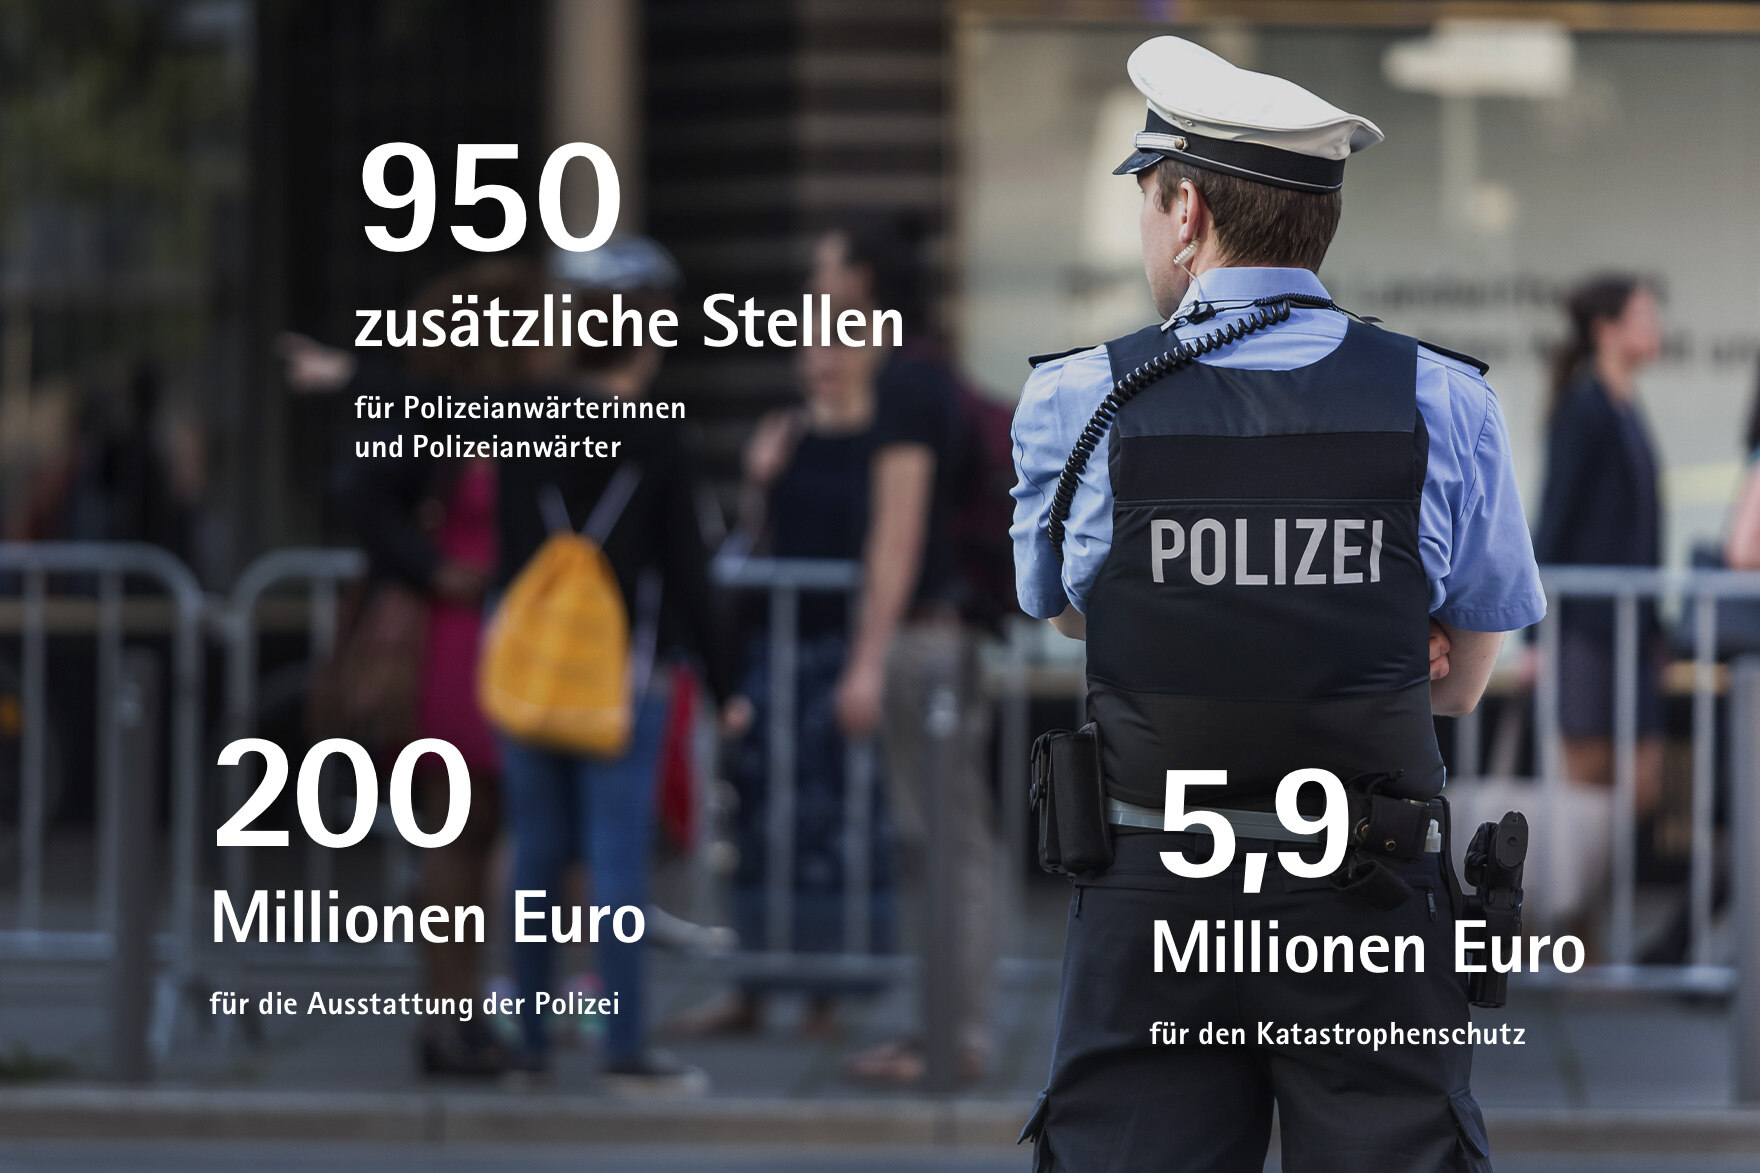 950 zusätzliche Stellen für Polizeianwärterinnen und Polizeianwärter, 5,9 Millionen Euro für den Katastrophenschutz, 200 Millionen Euro für die Ausstattung der Polizei